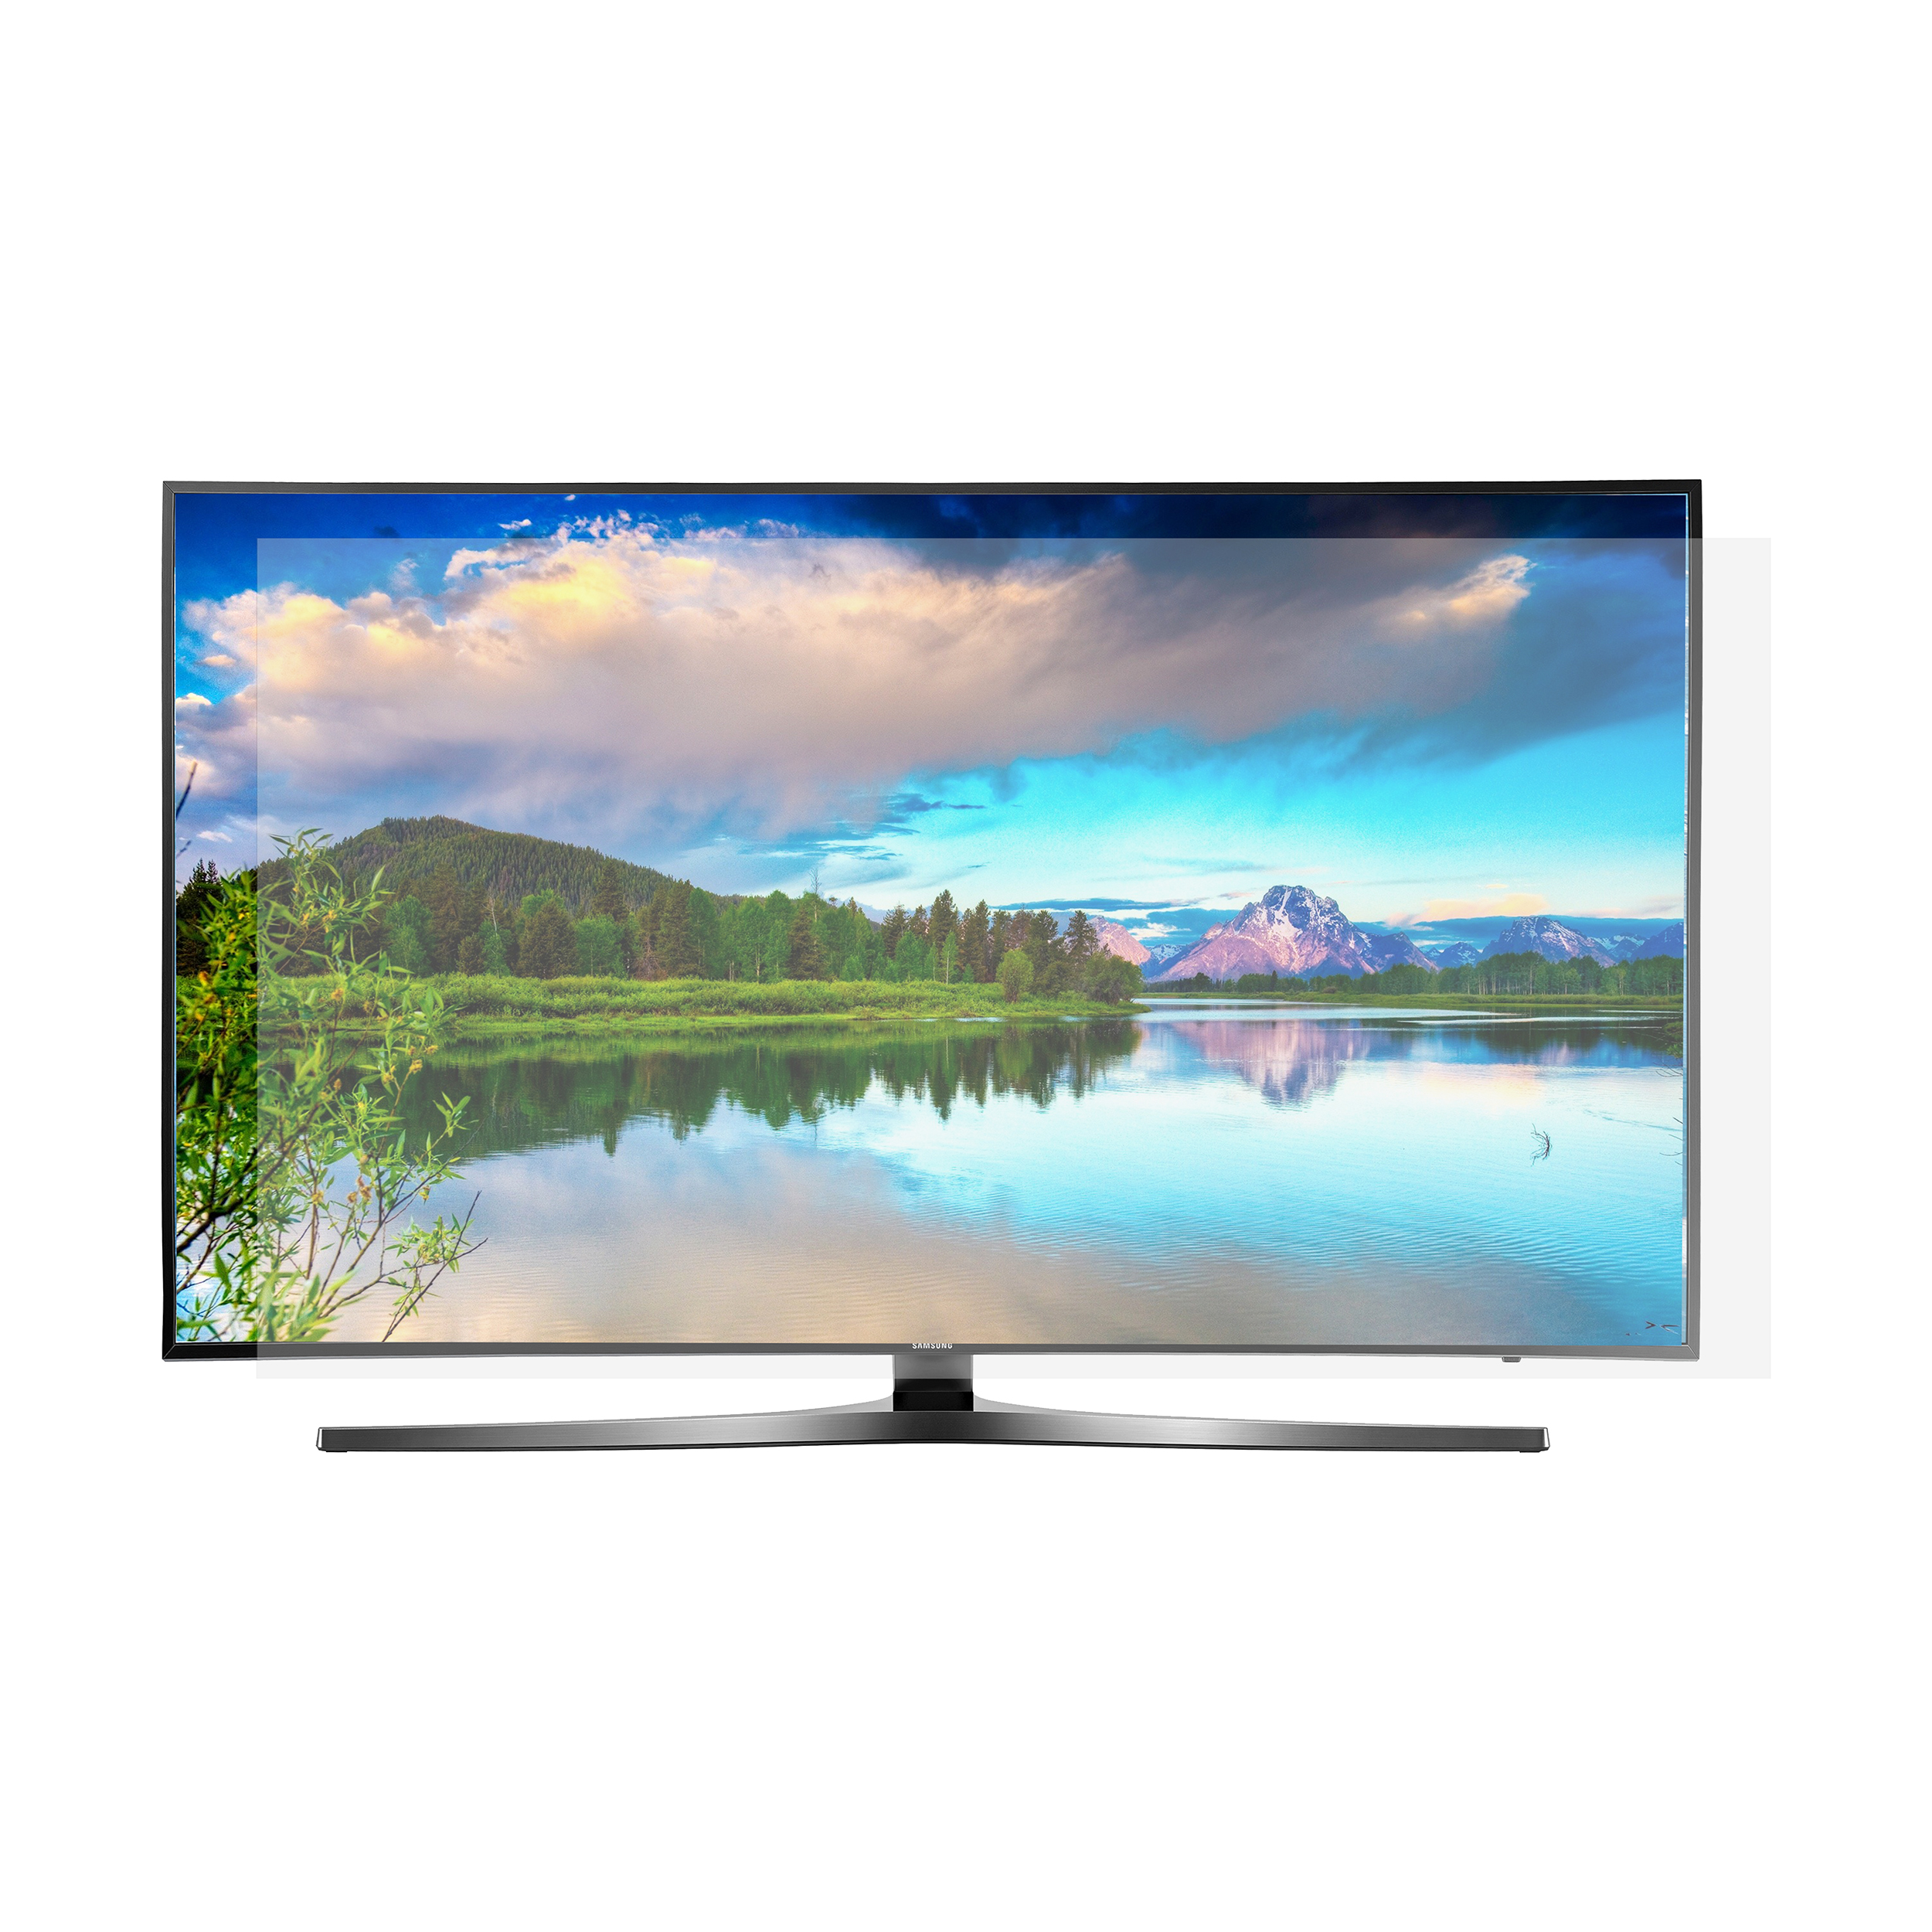 محافظ صفحه نمایش تلویزیون مدل SP-48 مناسب برای تلویزیون های 48 اینچی